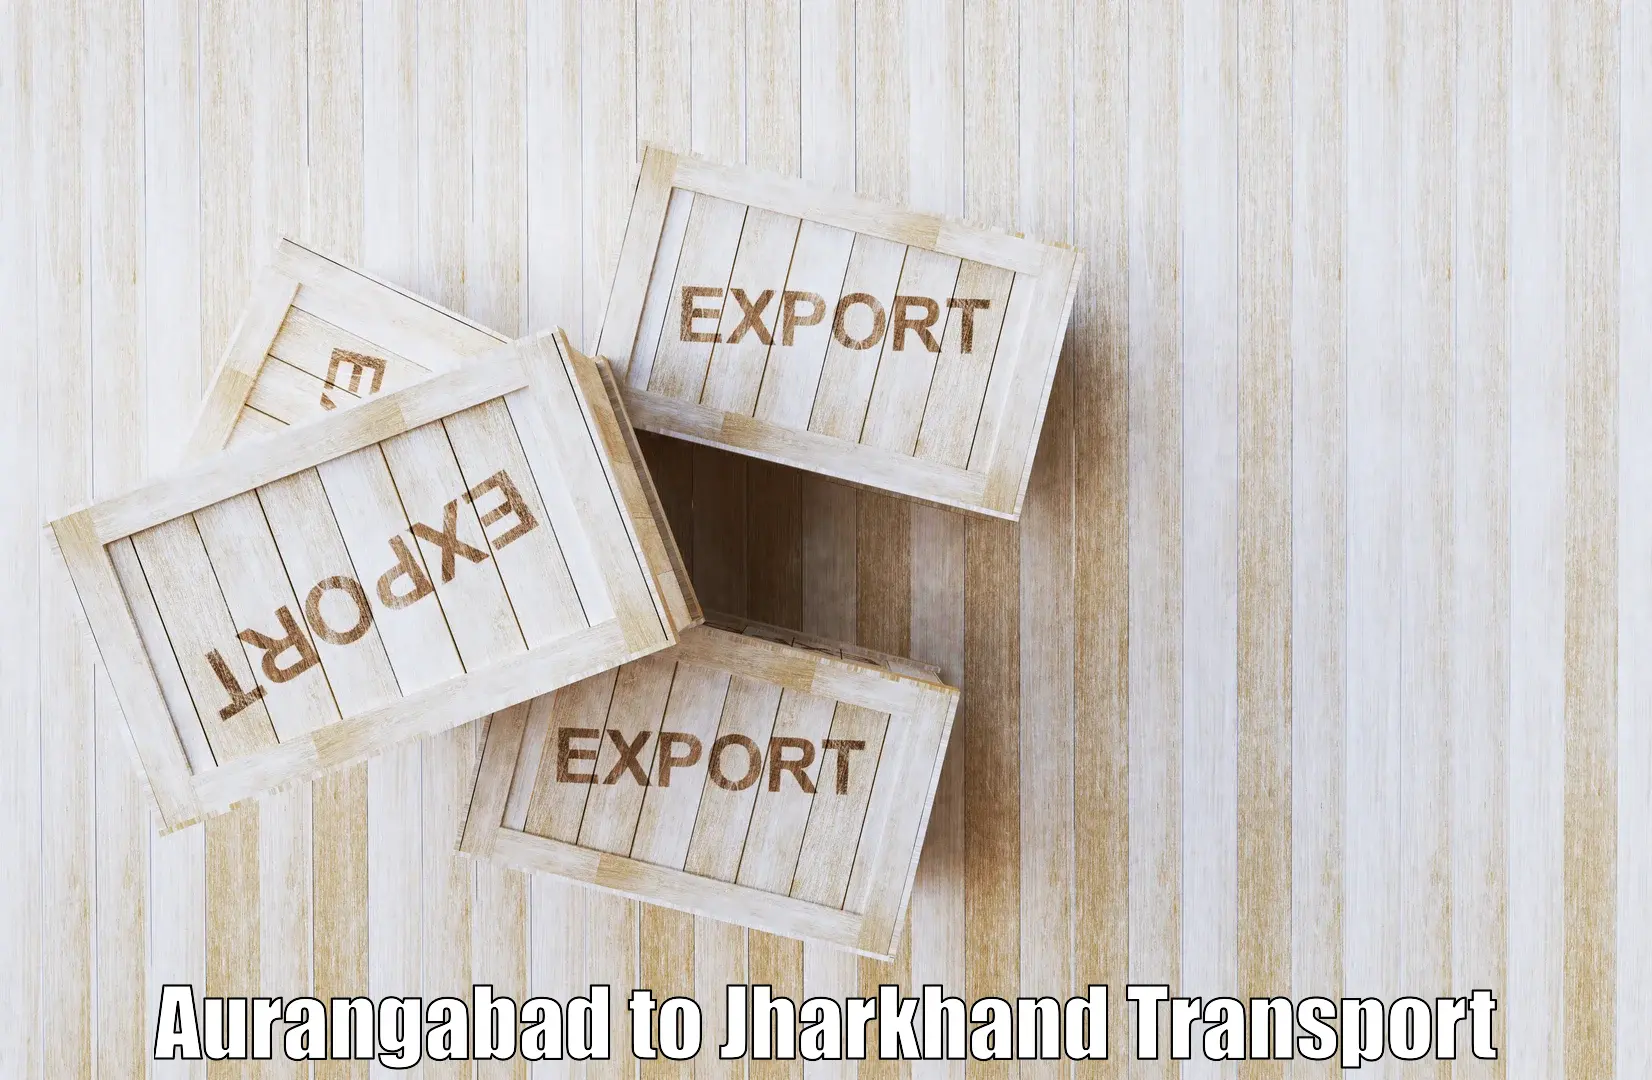 Road transport online services Aurangabad to Barkagaon